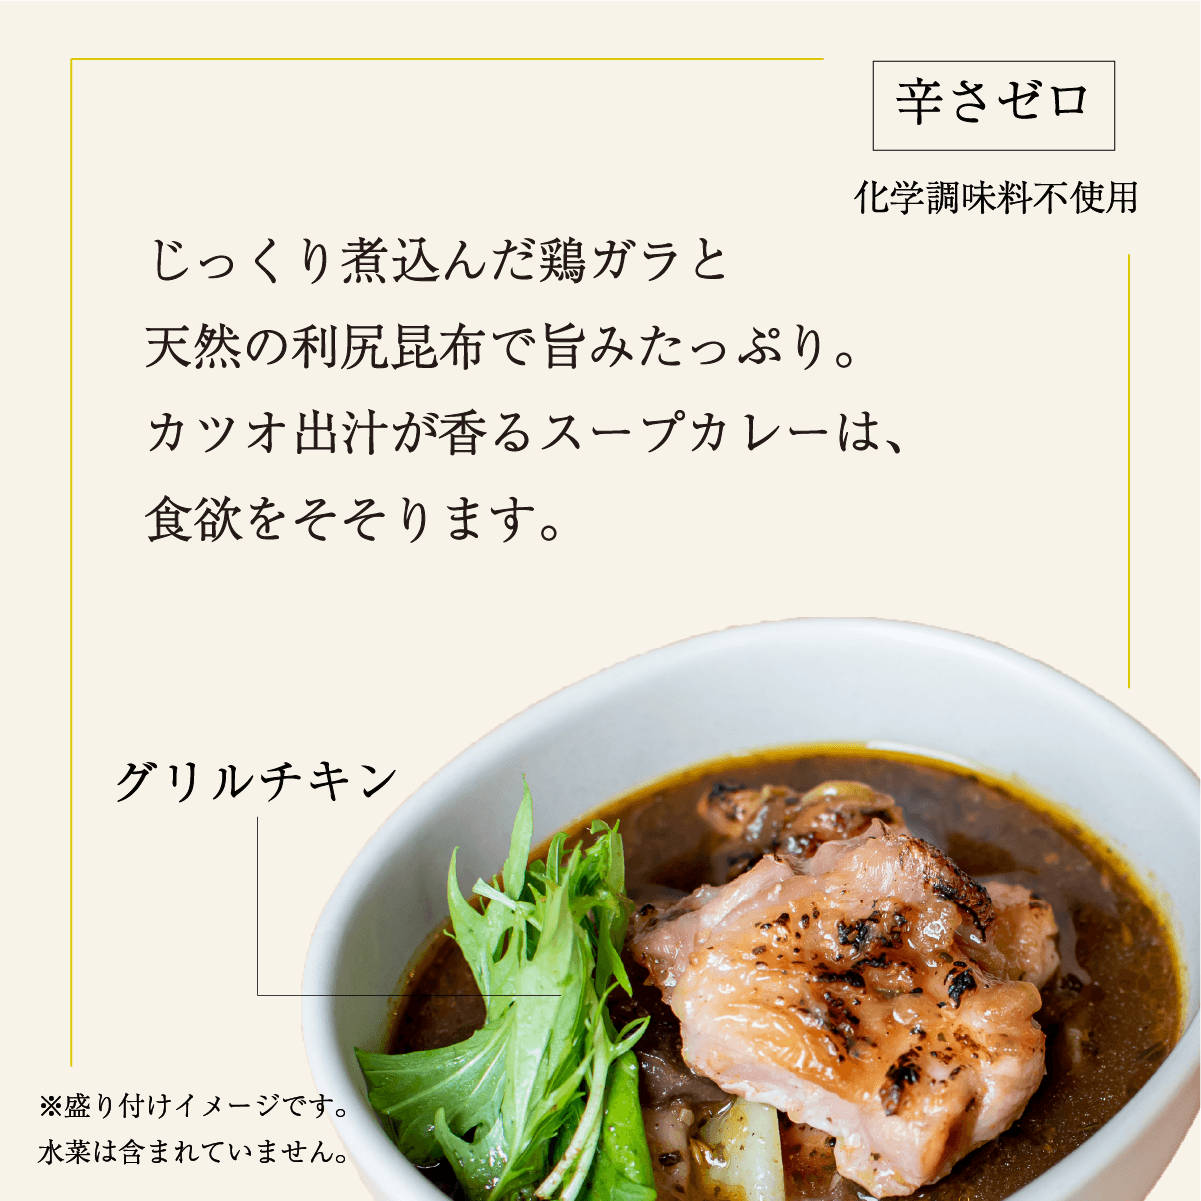 お出汁のきいたチキンスープカリー［辛みゼロ］ l 冷凍 Soup Curry